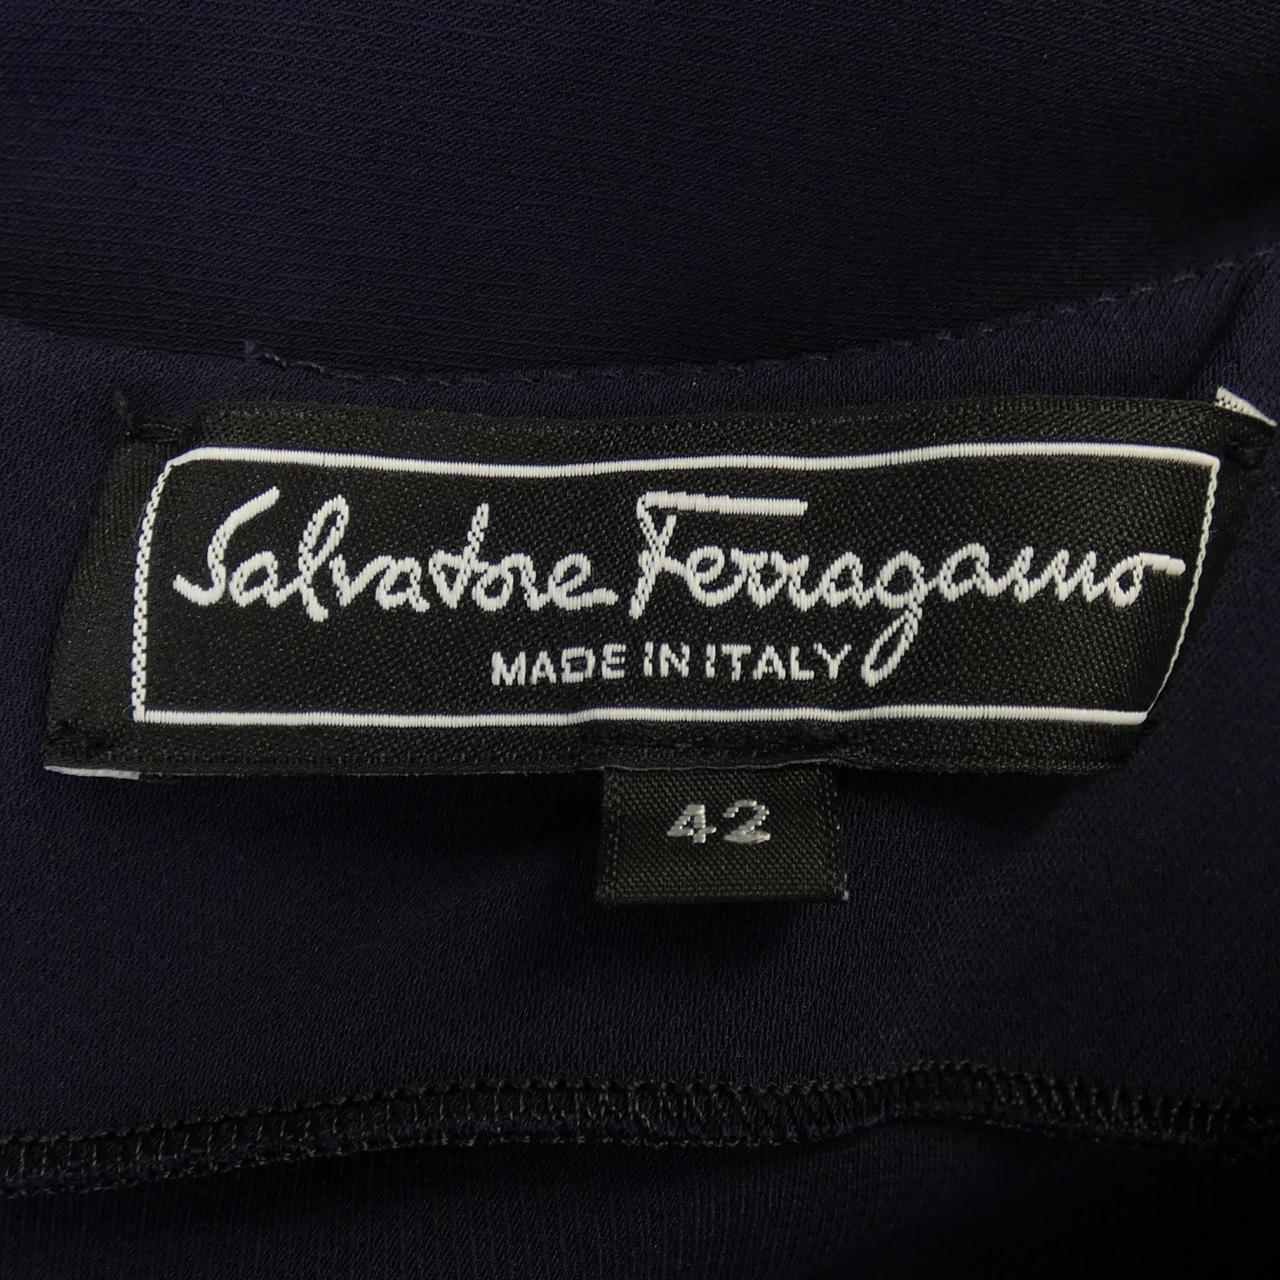 薩爾瓦托雷‧菲拉格慕SALVATORE FERRAGAMO薩爾瓦托雷‧菲拉格慕 (Salvatore Ferragamo) 一件